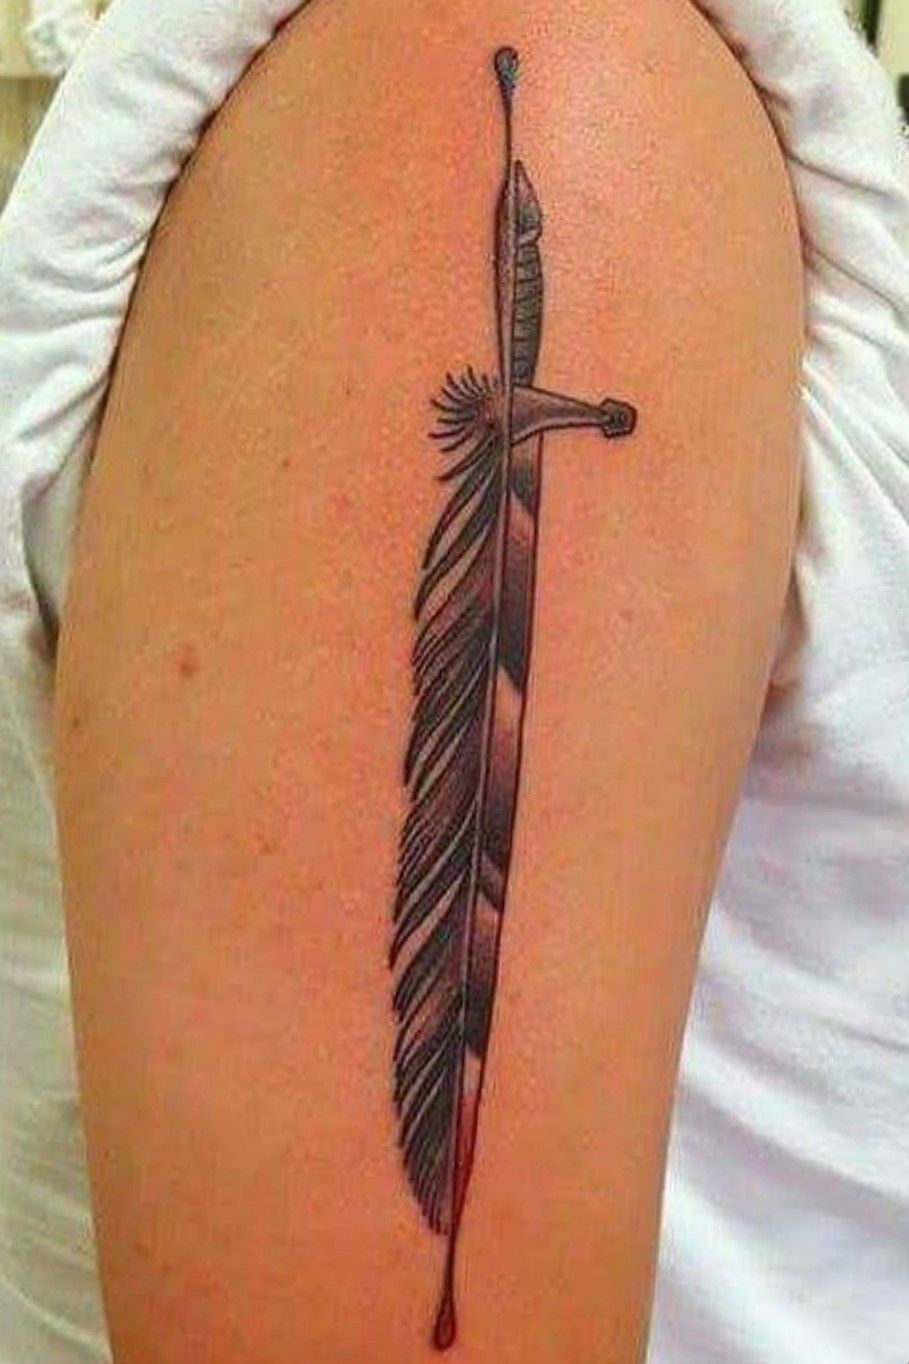 Power line tattoo by mateutsa  Tattoogridnet